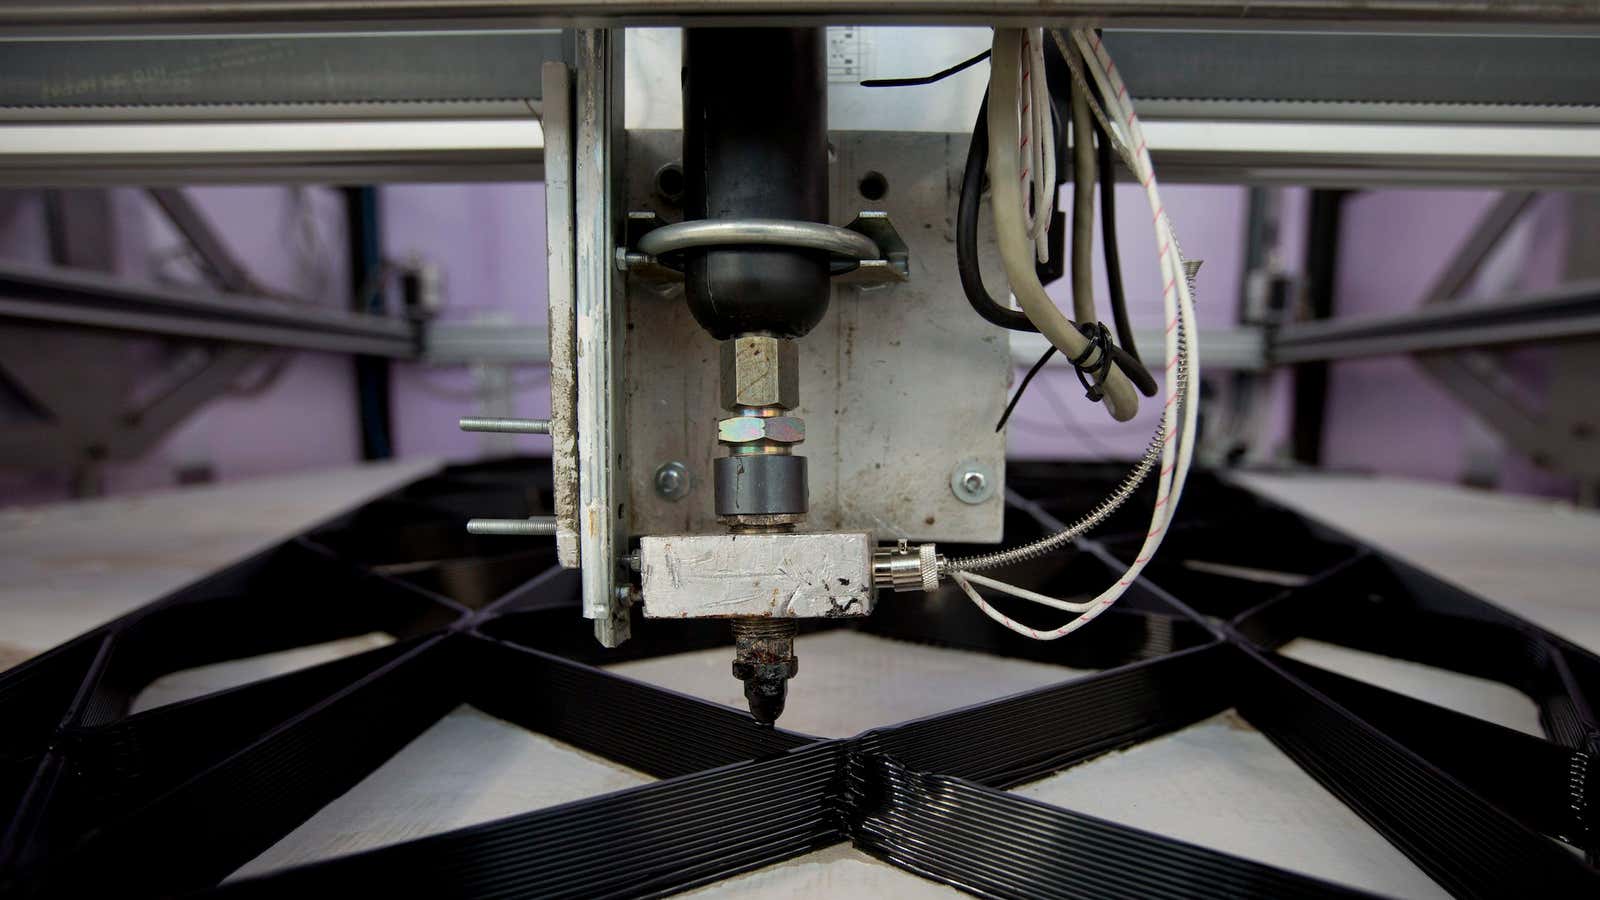 An actual 3-D printer at work.